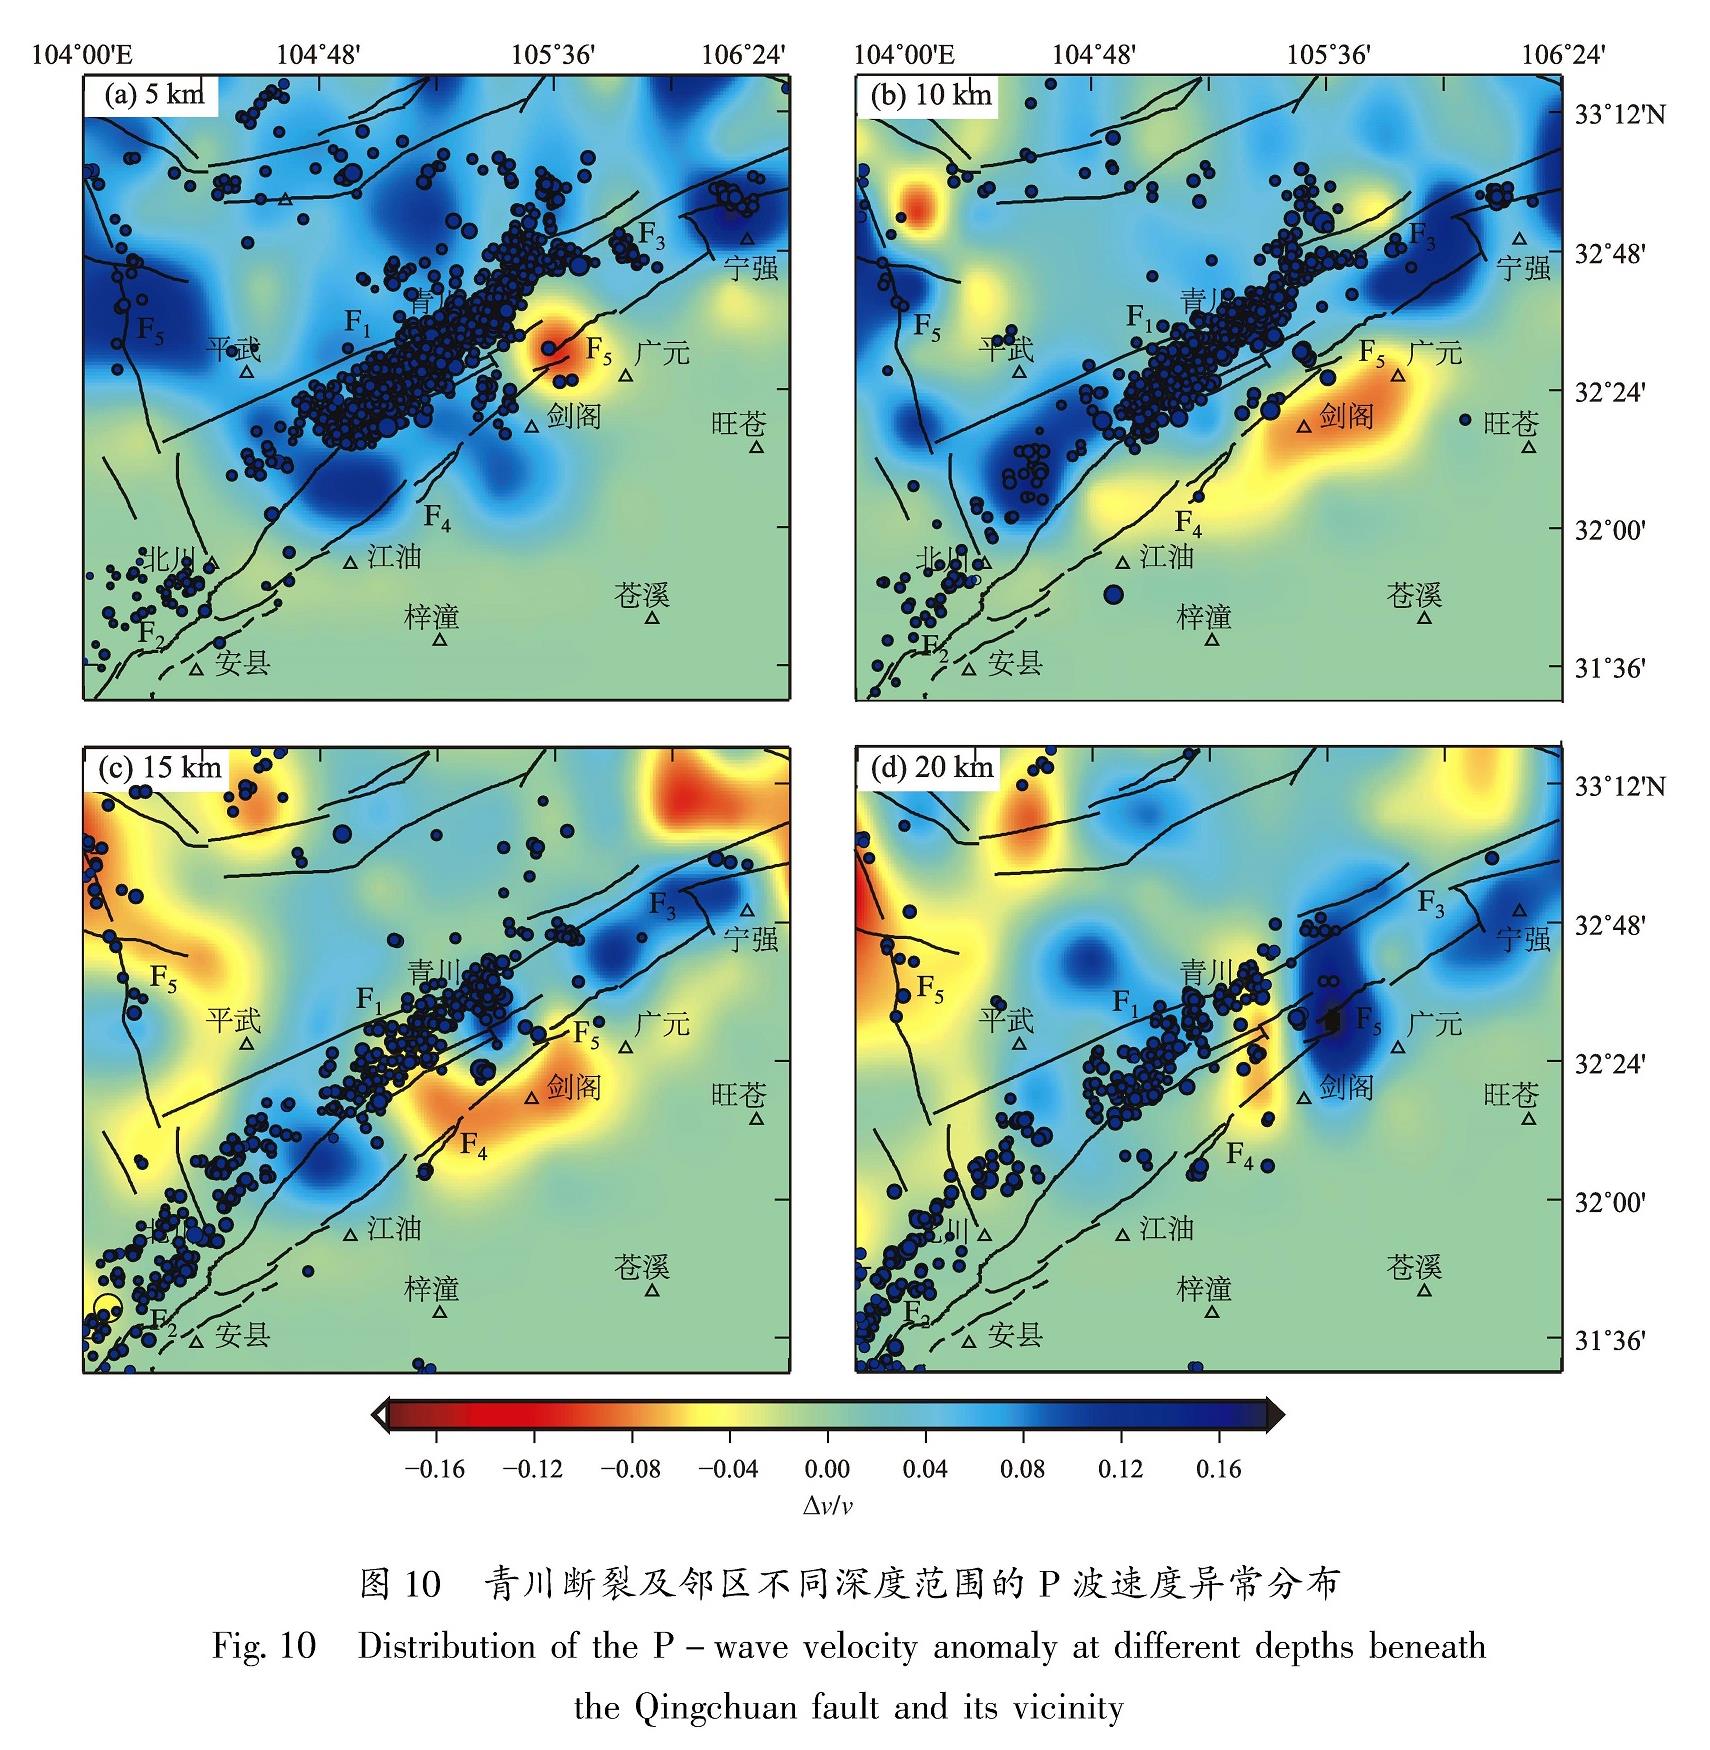 图 10 青川断裂及邻区不同深度范围的P波速度异常分布<br/>Fig.10 Distribution of the P-wave velocity anomaly at different depths beneath the Qingchuan fault and its vicinity